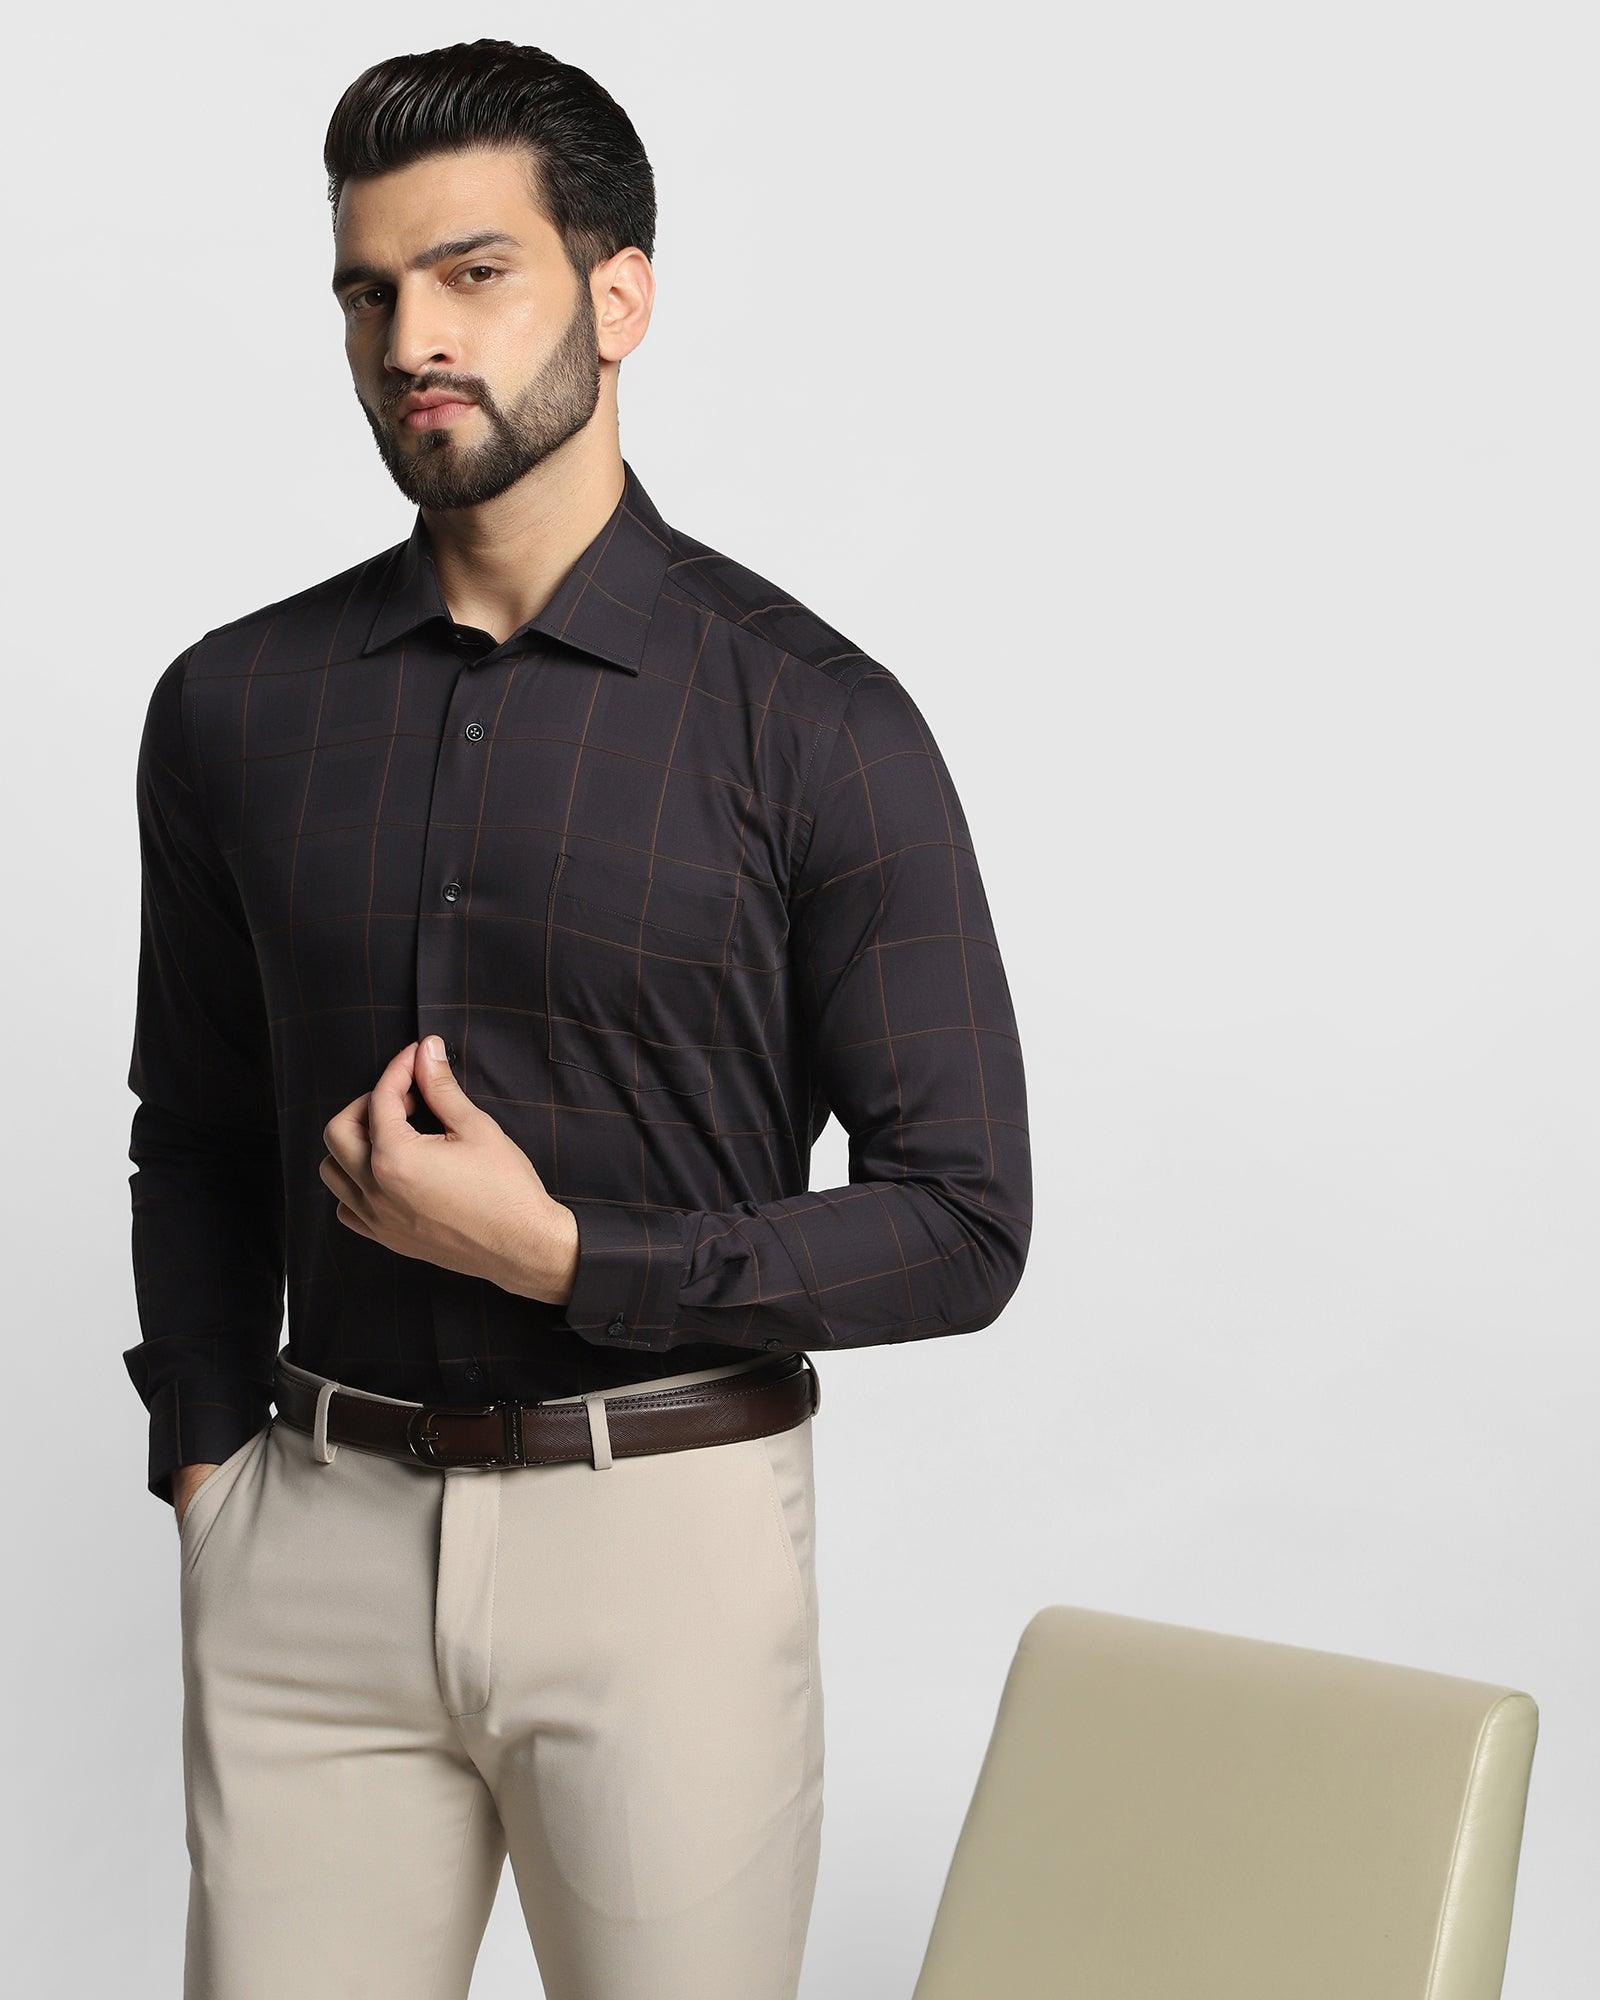 YOVISH Men Solid Casual Black Shirt - Buy YOVISH Men Solid Casual Black  Shirt Online at Best Prices in India | Flipkart.com